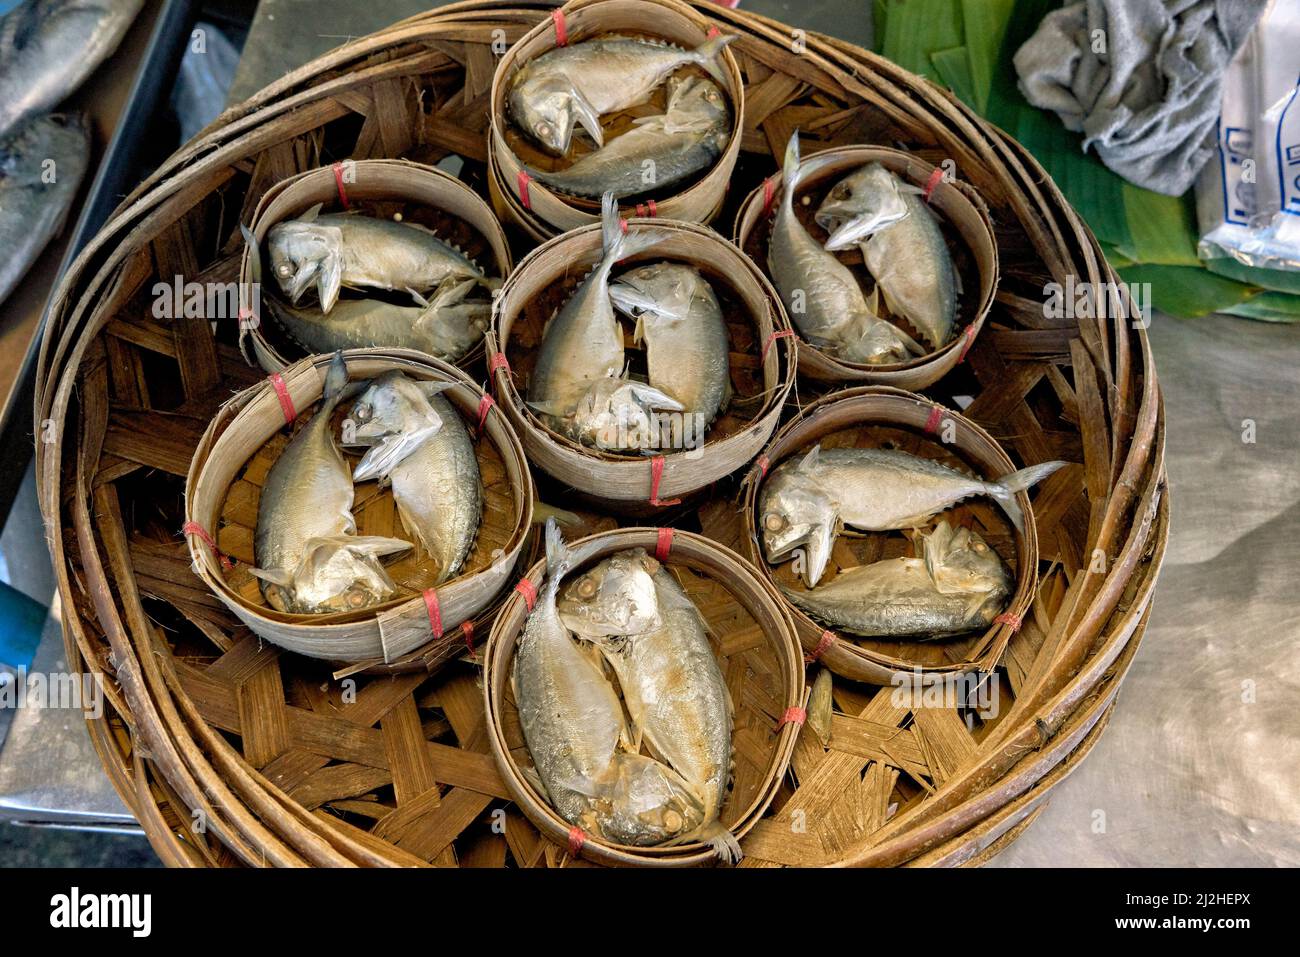 Maquereau thaïlandais petit poisson unique au golfe de Thaïlande avec sa petite taille et sa forme ronde et courte Banque D'Images